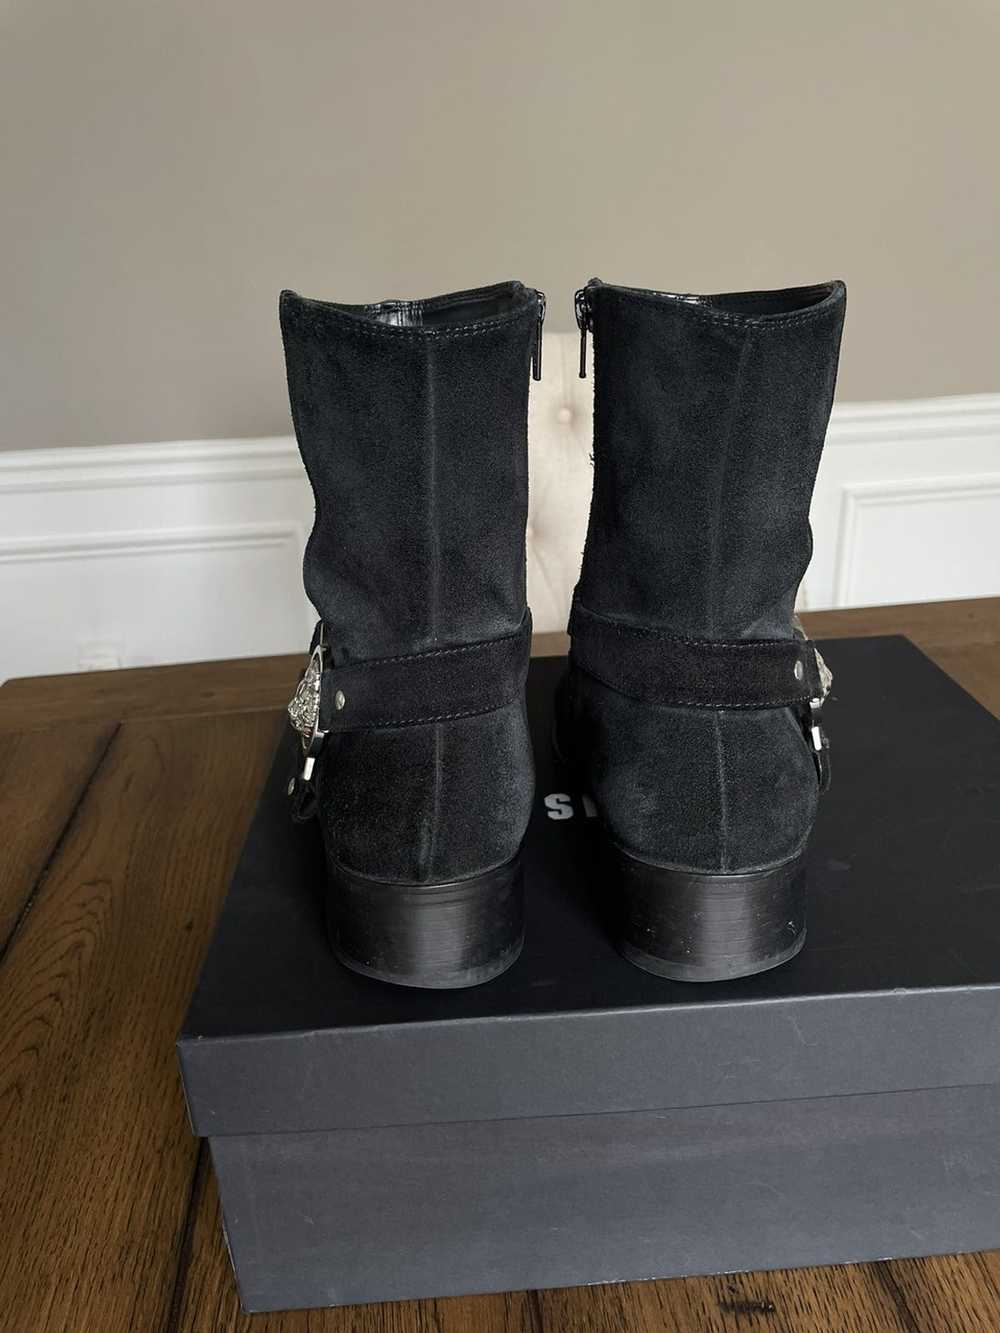 Versus Versace Versus Versace boot (Leather sole) - image 6